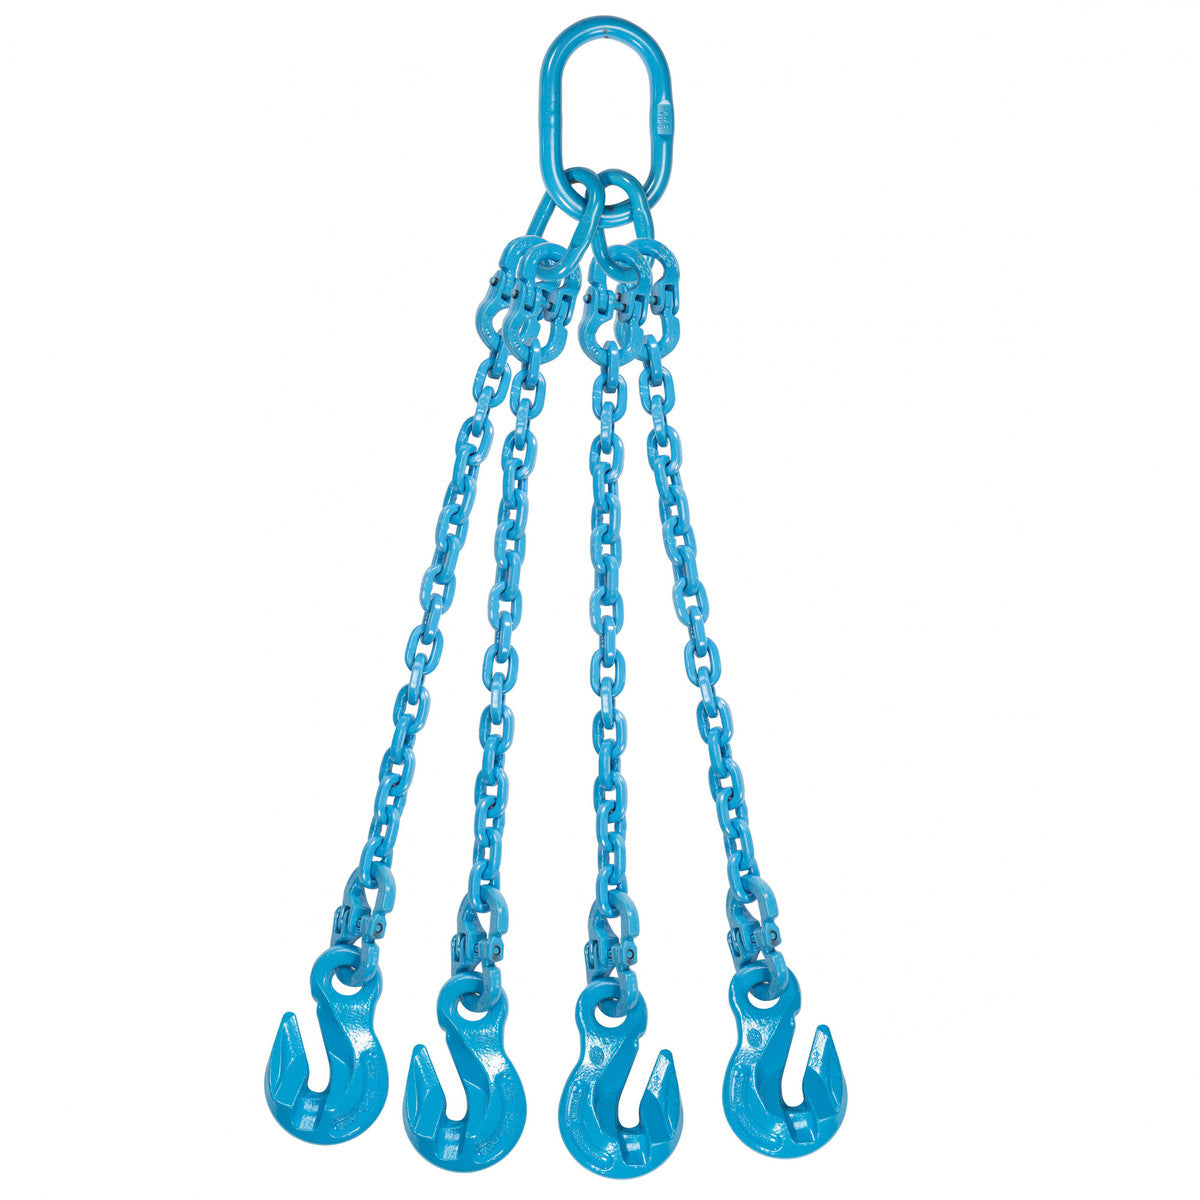 9/32" x 18' - Pewag 4 Leg Chain Sling w/ Grab Hooks - Grade 120